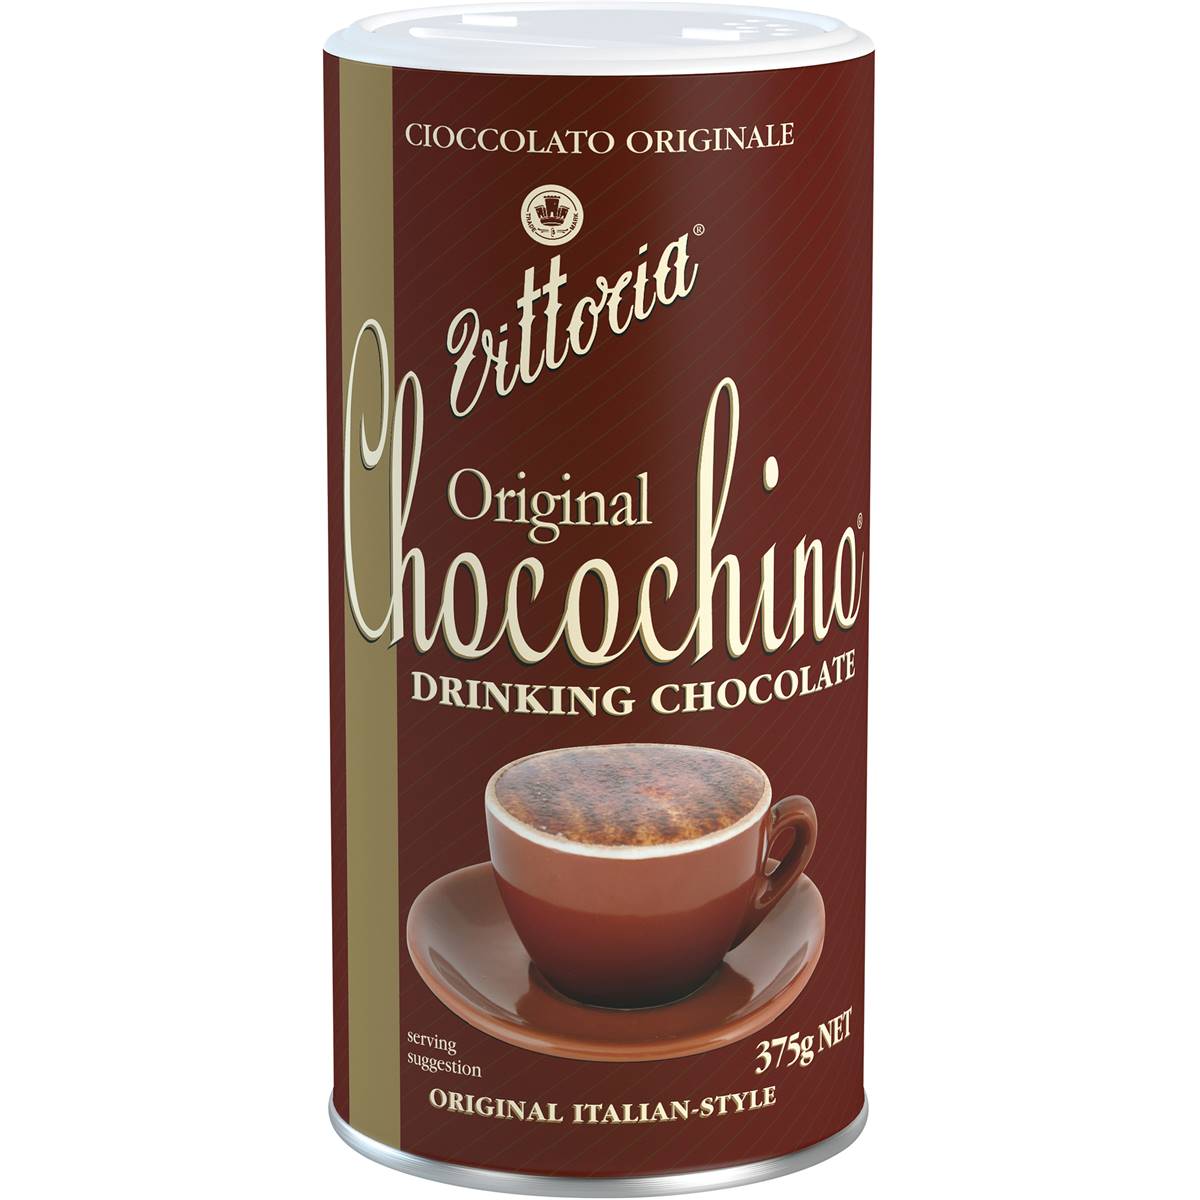 Calories in Vittoria Chocochino Drinking Chocolate